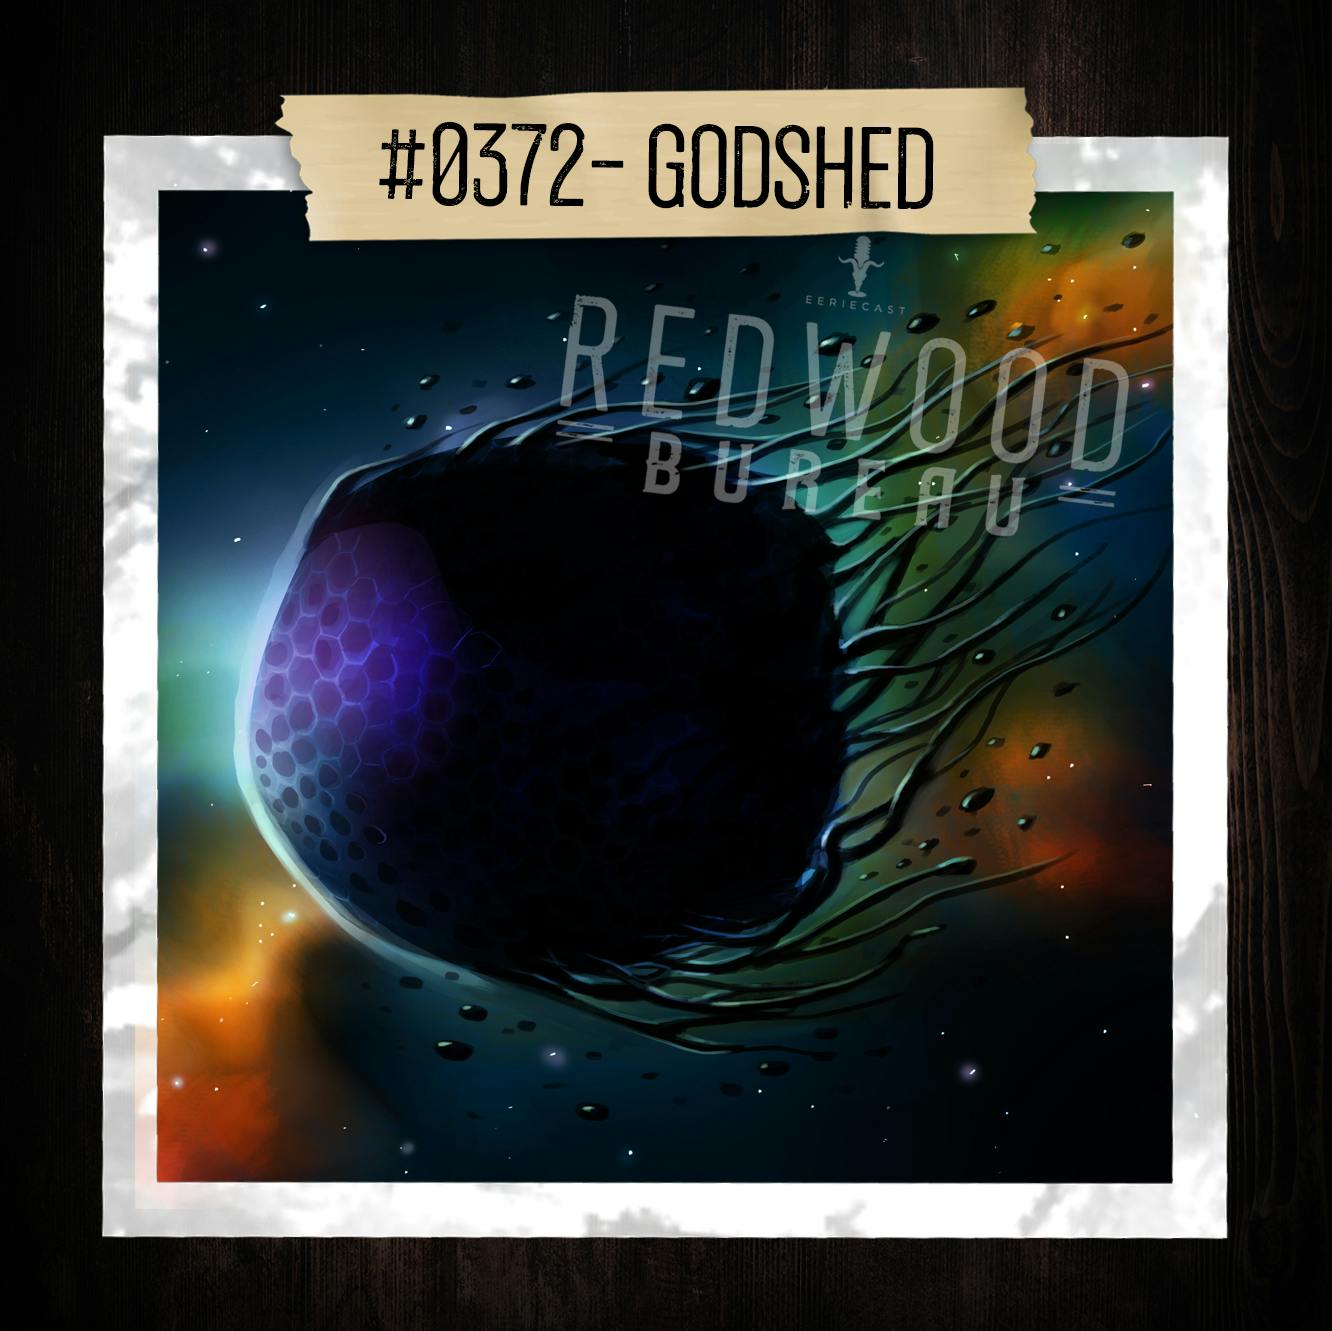 "GODSHED" - Redwood Bureau Phenomenon #0372